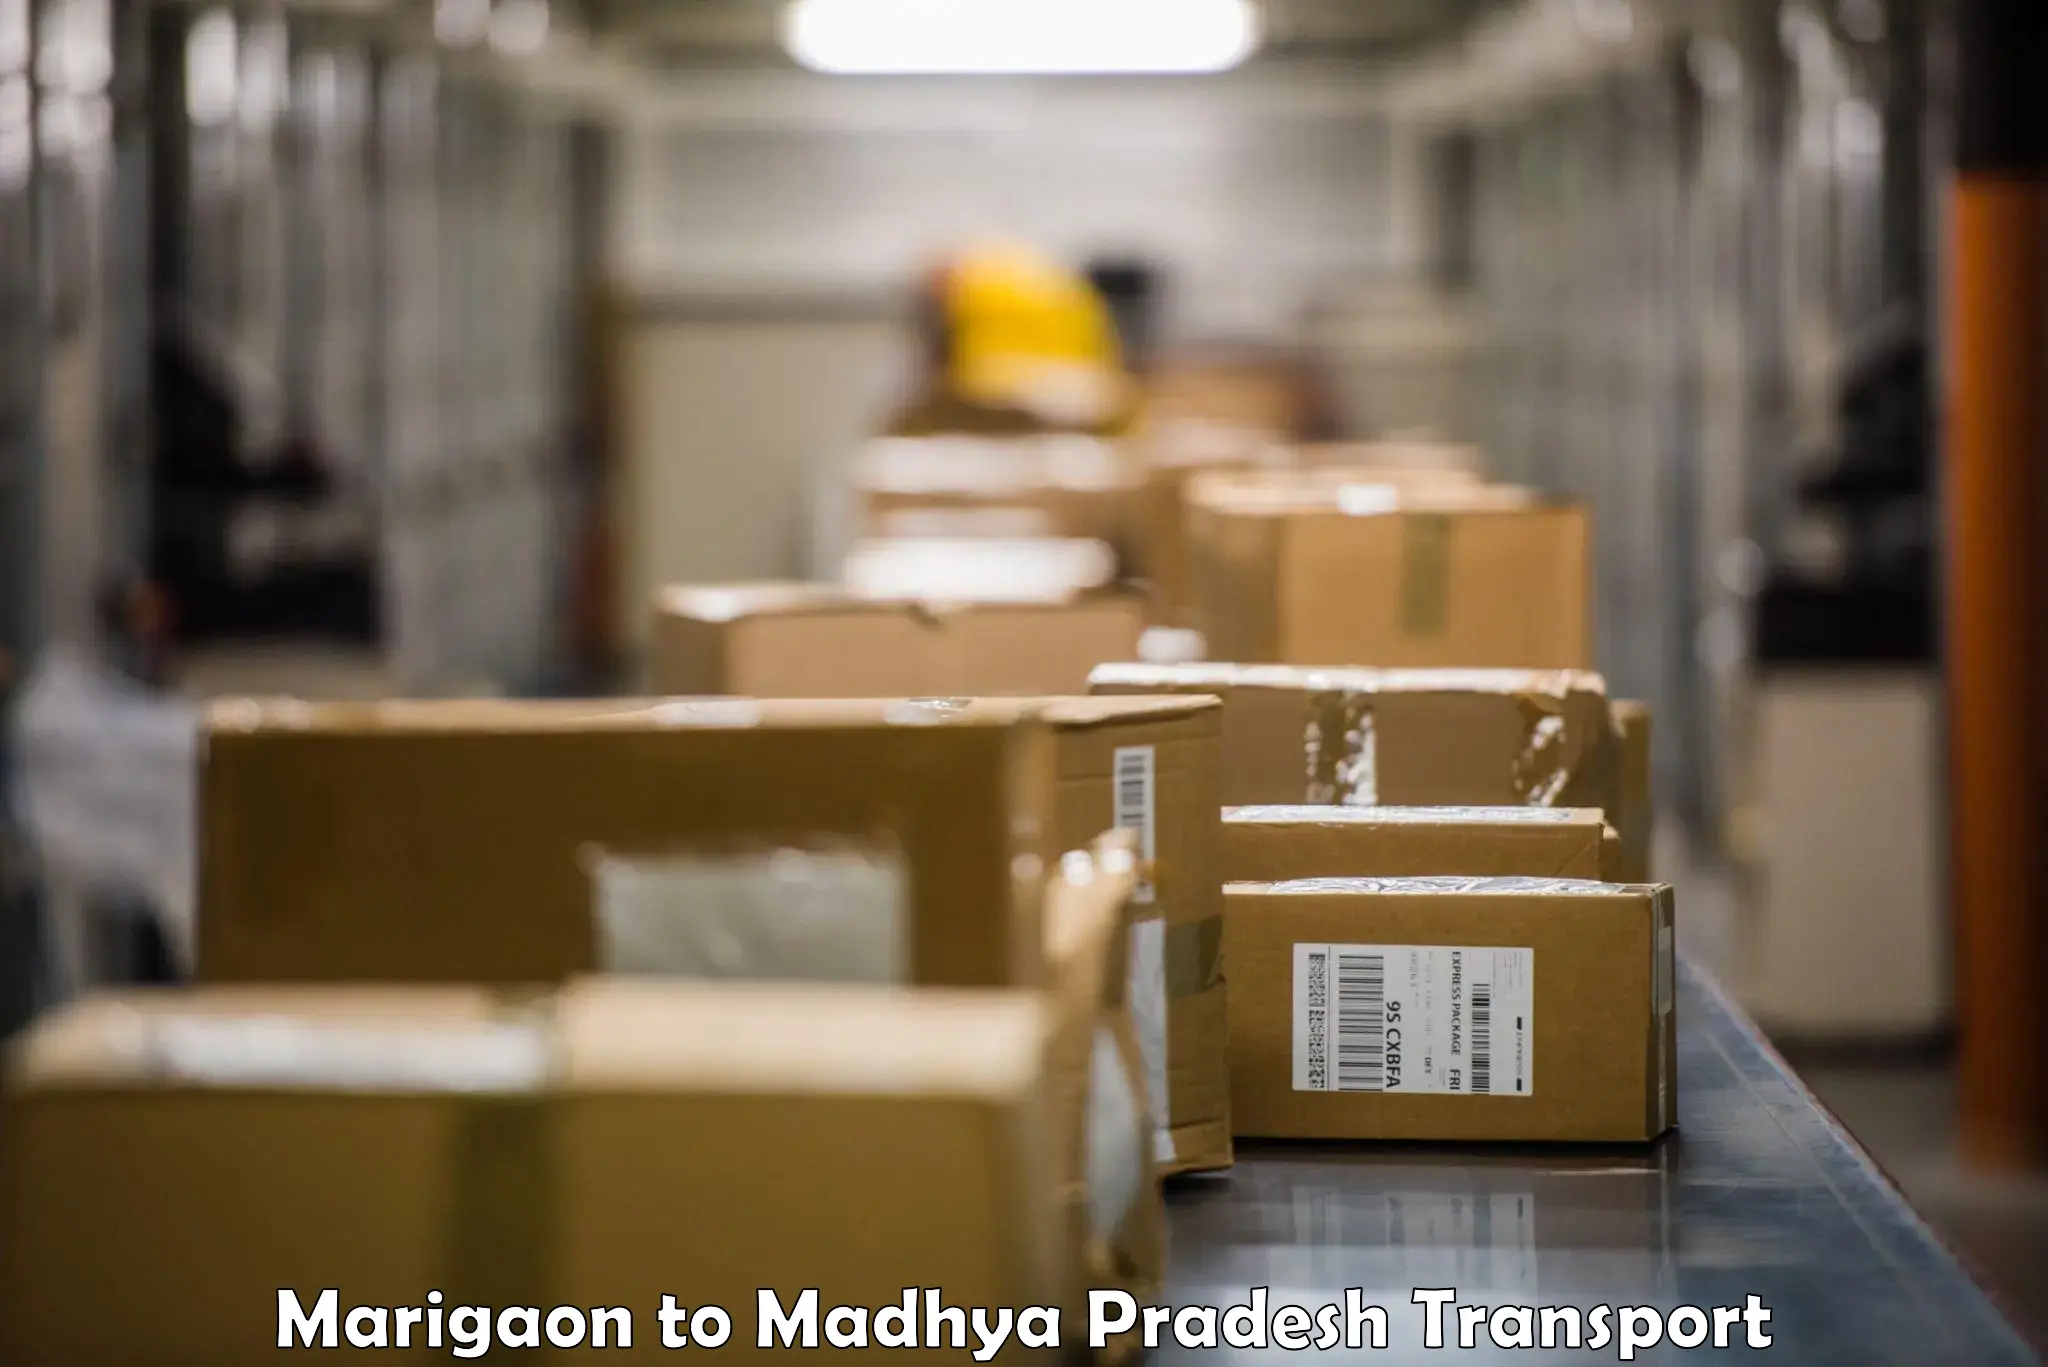 Shipping services Marigaon to Chhindwara